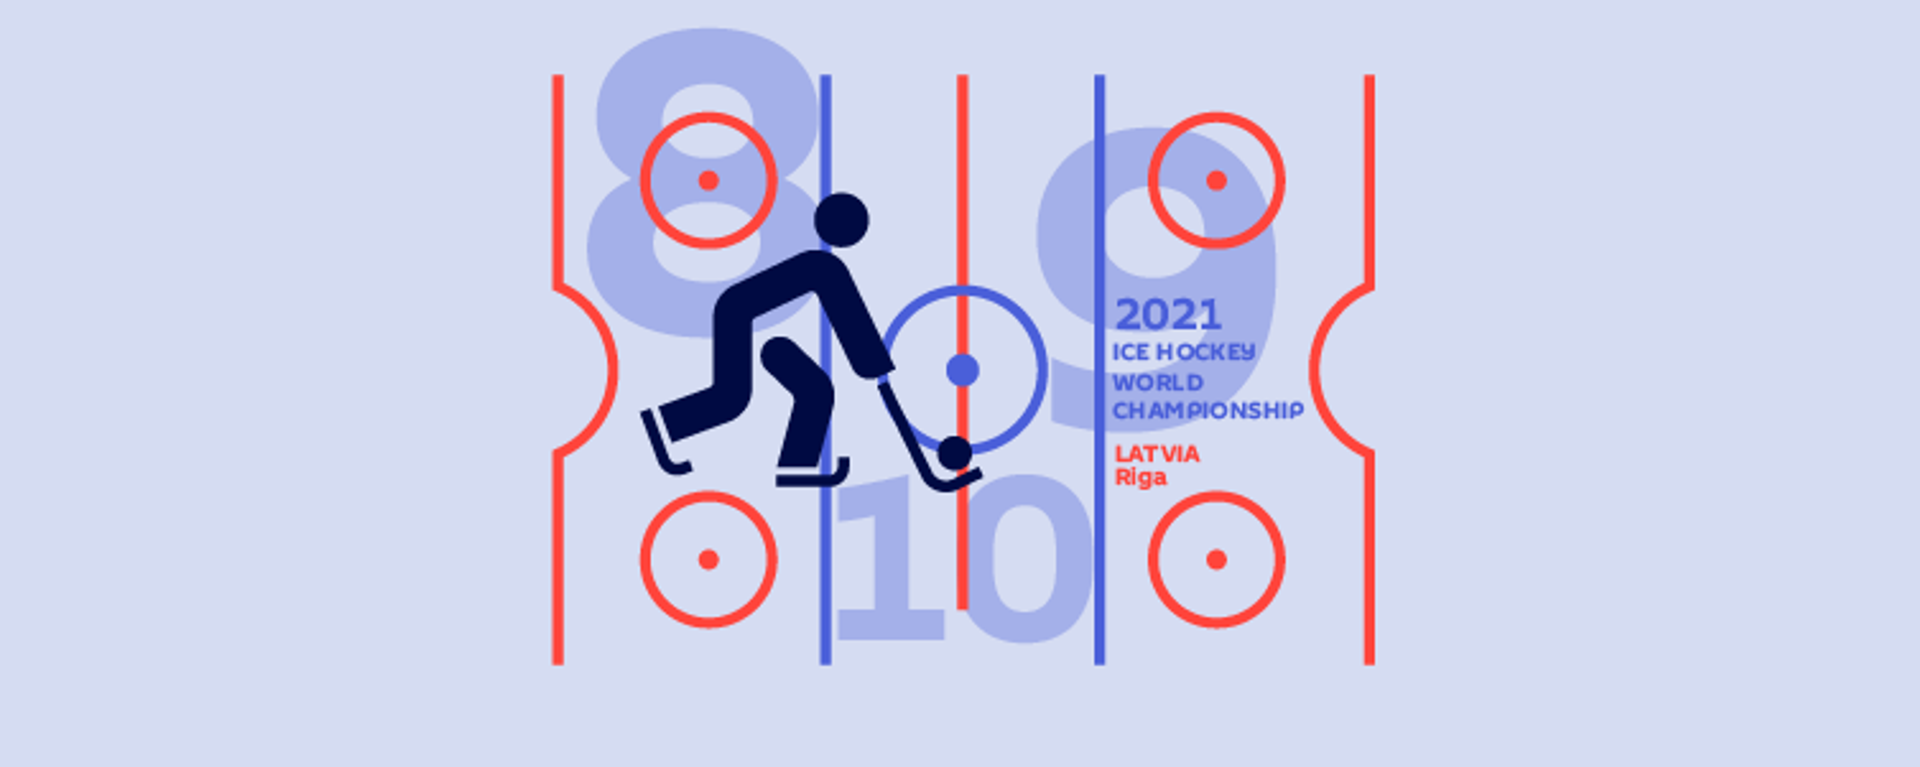 Результаты и турнирная таблица чемпионата мира по хоккею — 2021 (8-й, 9-й, 10-й дни) - Sputnik Таджикистан, 1920, 31.05.2021